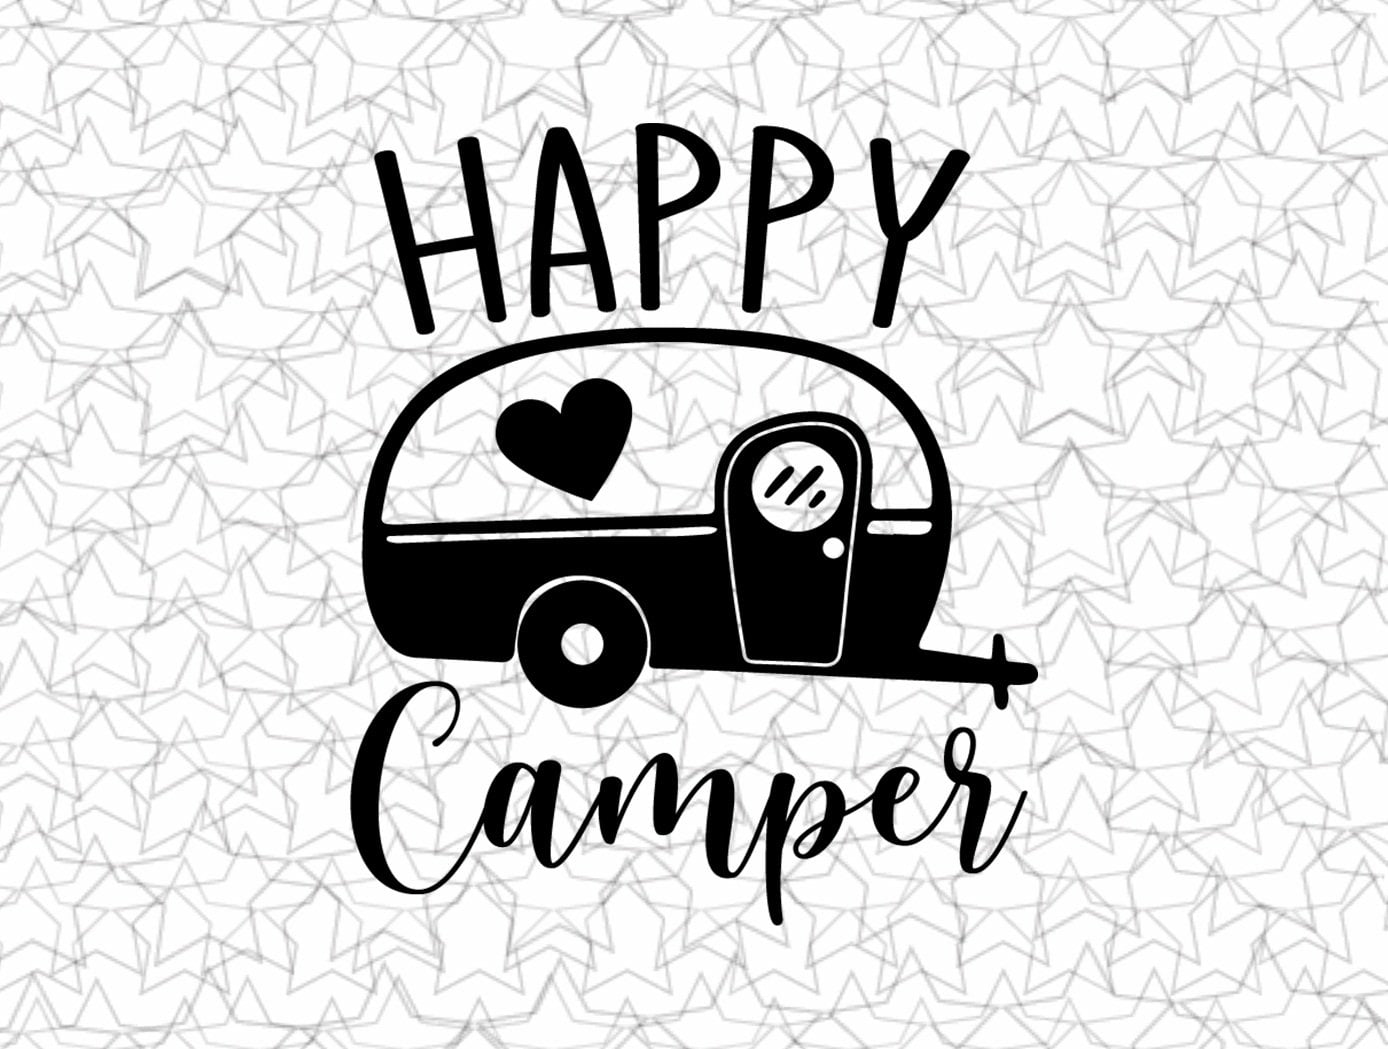 Happy Camper RV Vinyl Sticker Decal Bumper Sticker for Auto Cars Trucks Windshield Windows Laptop Camper Kayak